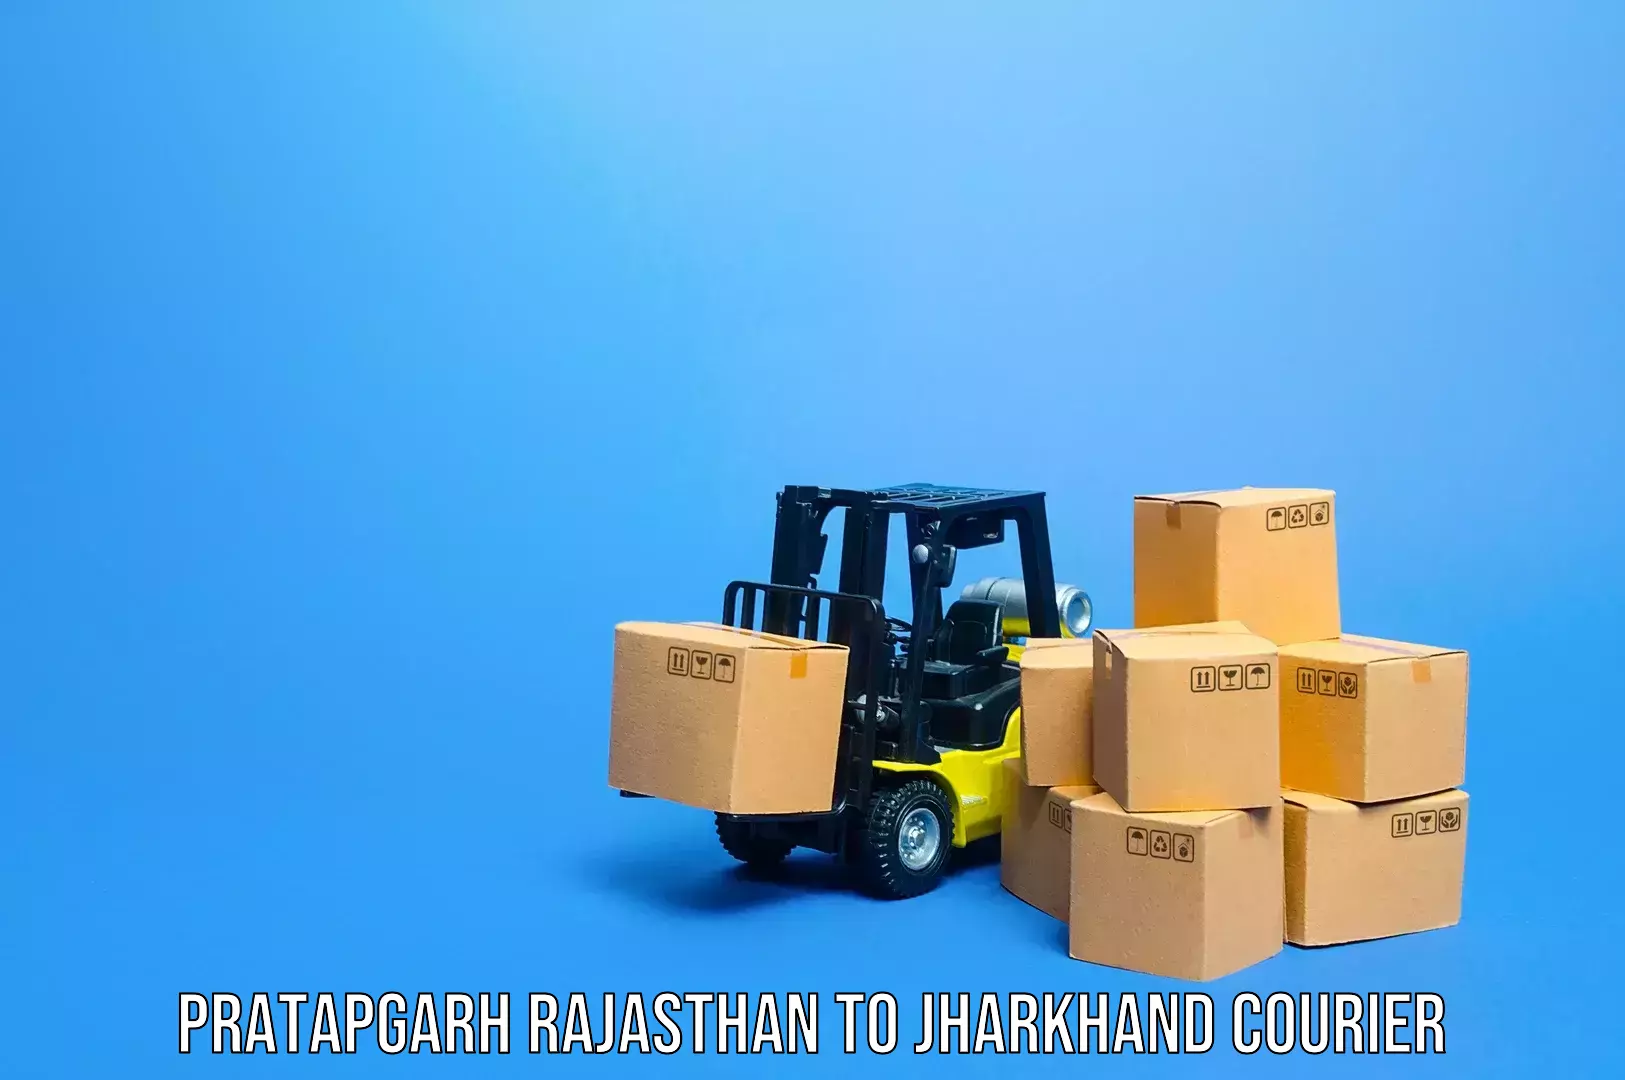 Luggage shipment tracking Pratapgarh Rajasthan to Jamshedpur